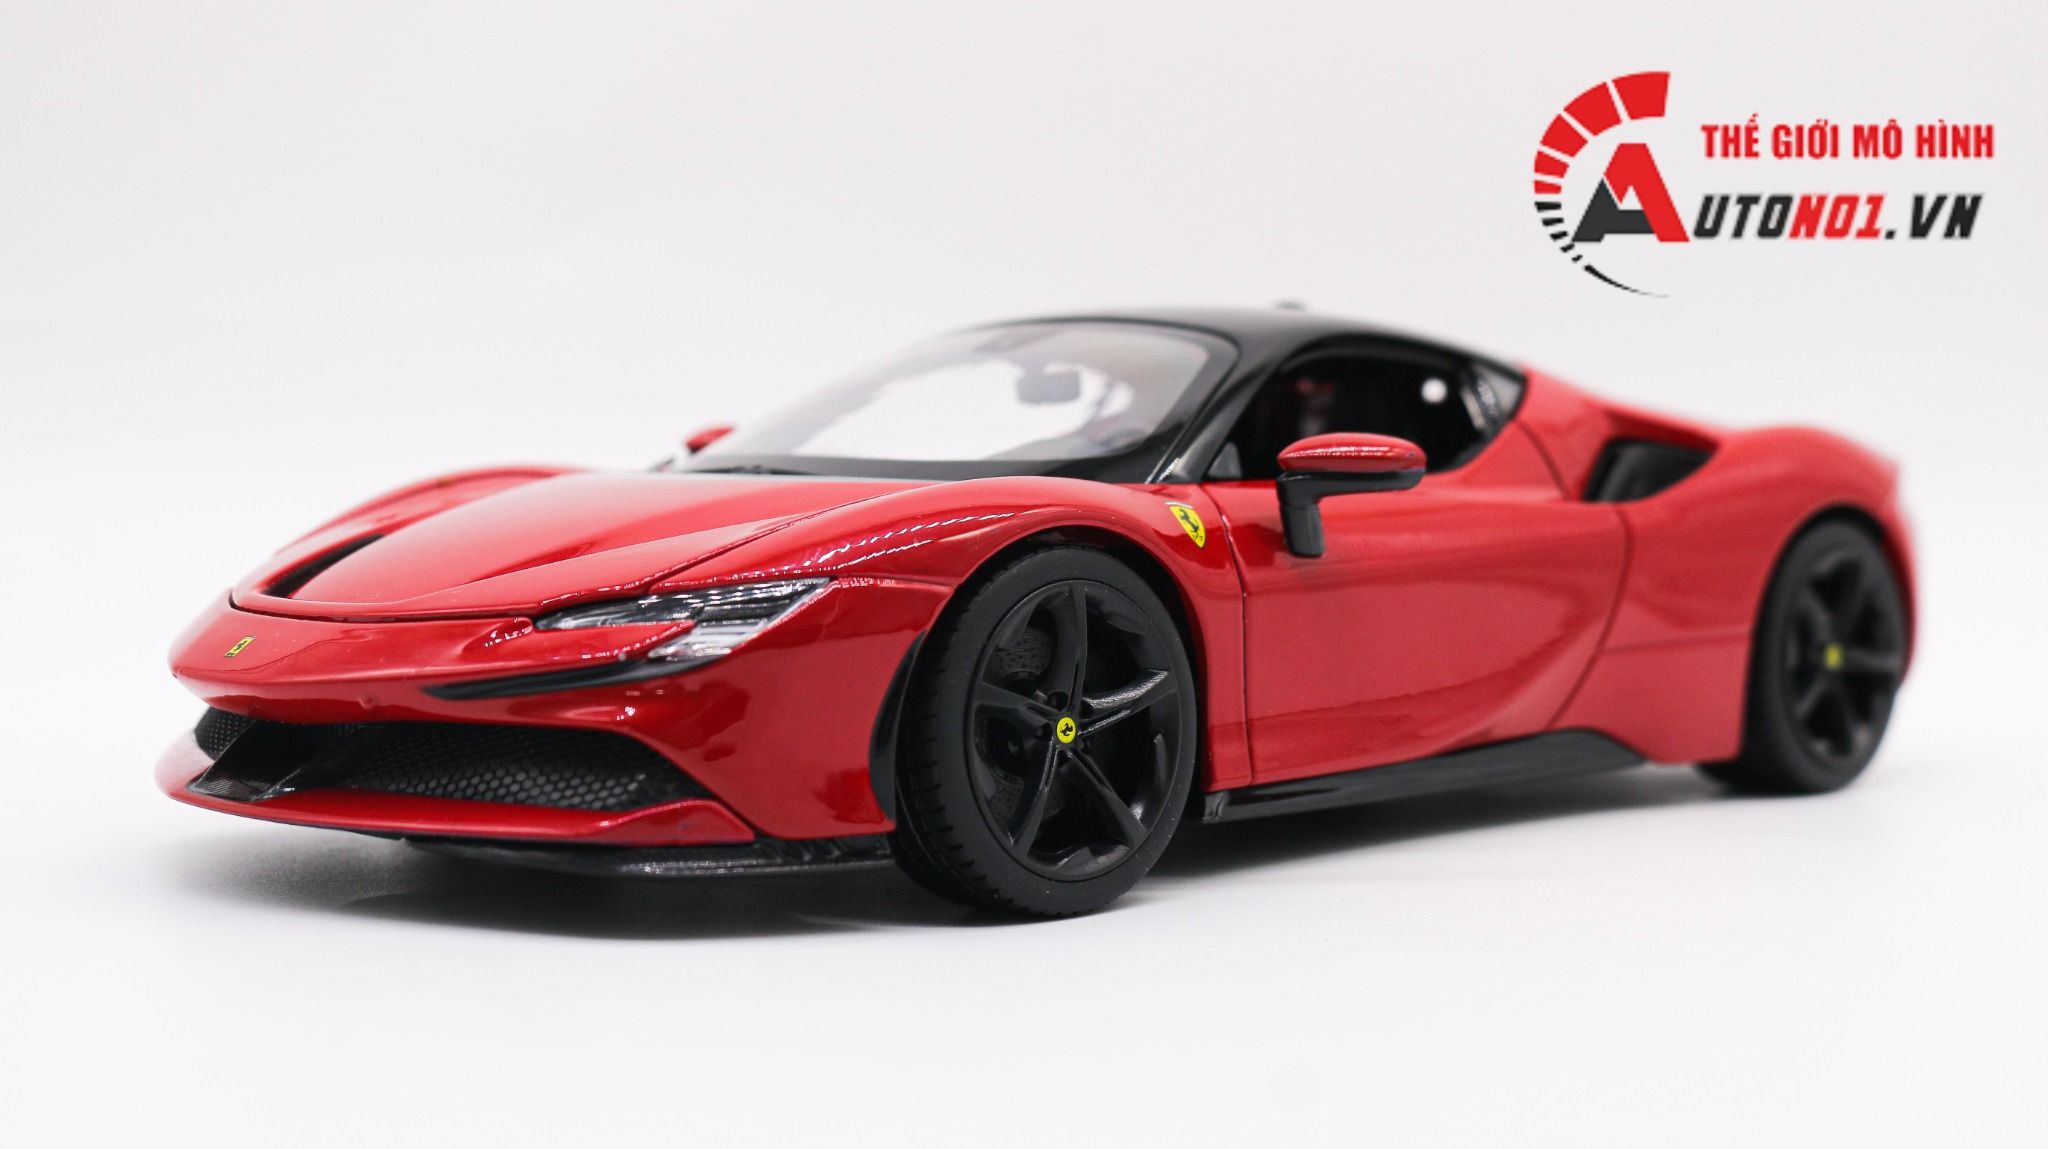 Mô hình xe Ferrari  Siêu xe đến từ Ý  banmohinhtinhcom